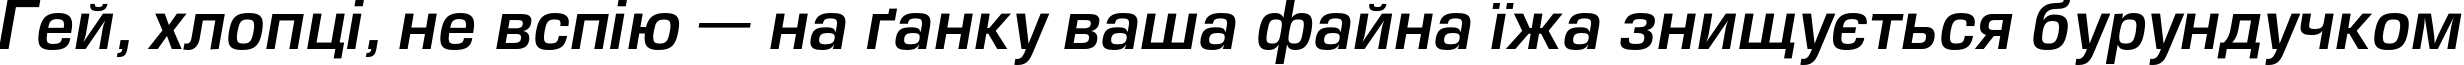 Пример написания шрифтом EuropeDemi Italic текста на украинском